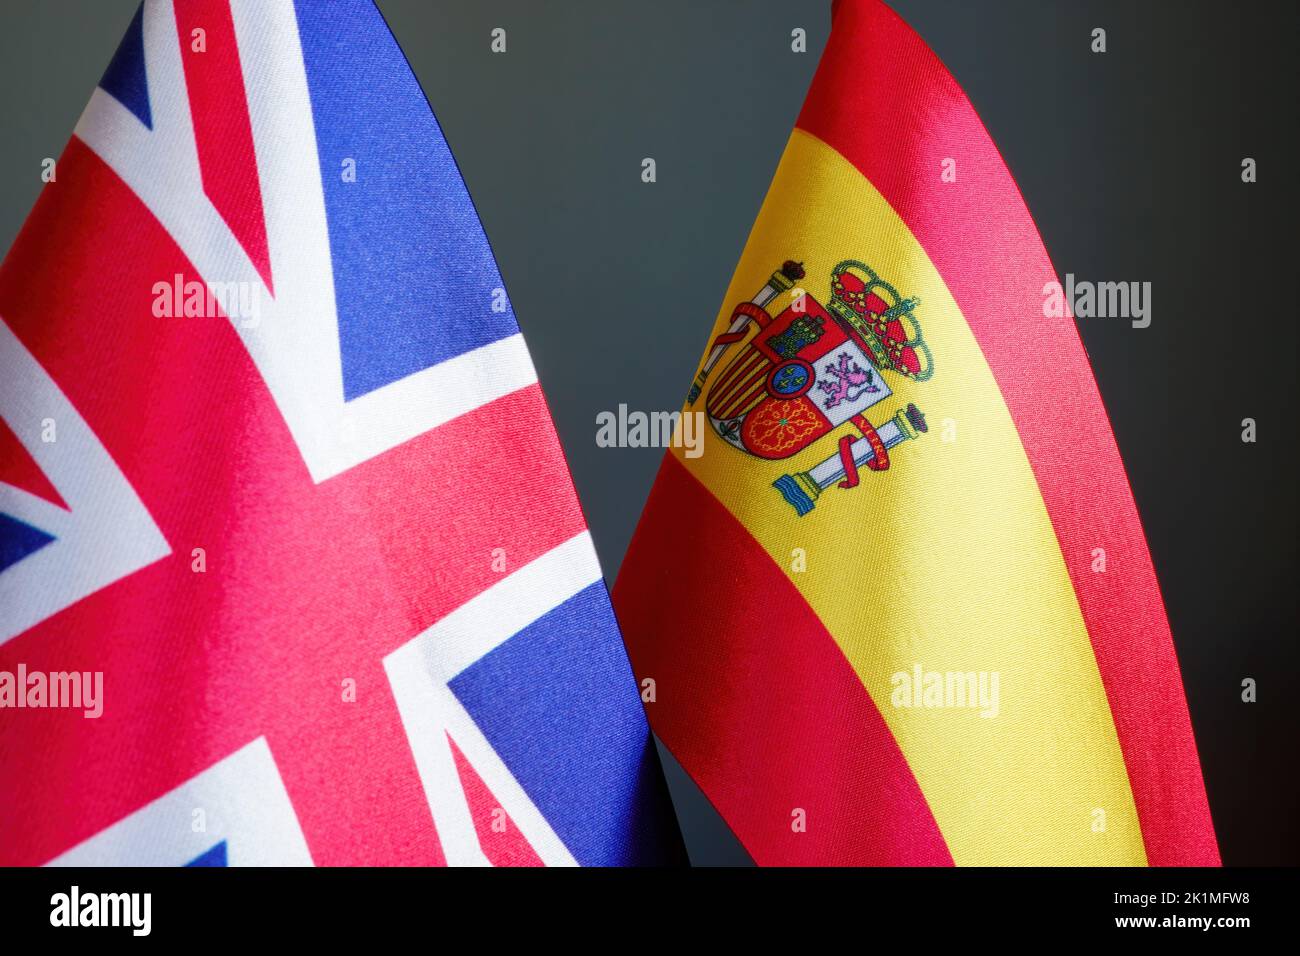 Banderas de Gran Bretaña y España como concepto de relaciones diplomáticas. Foto de stock